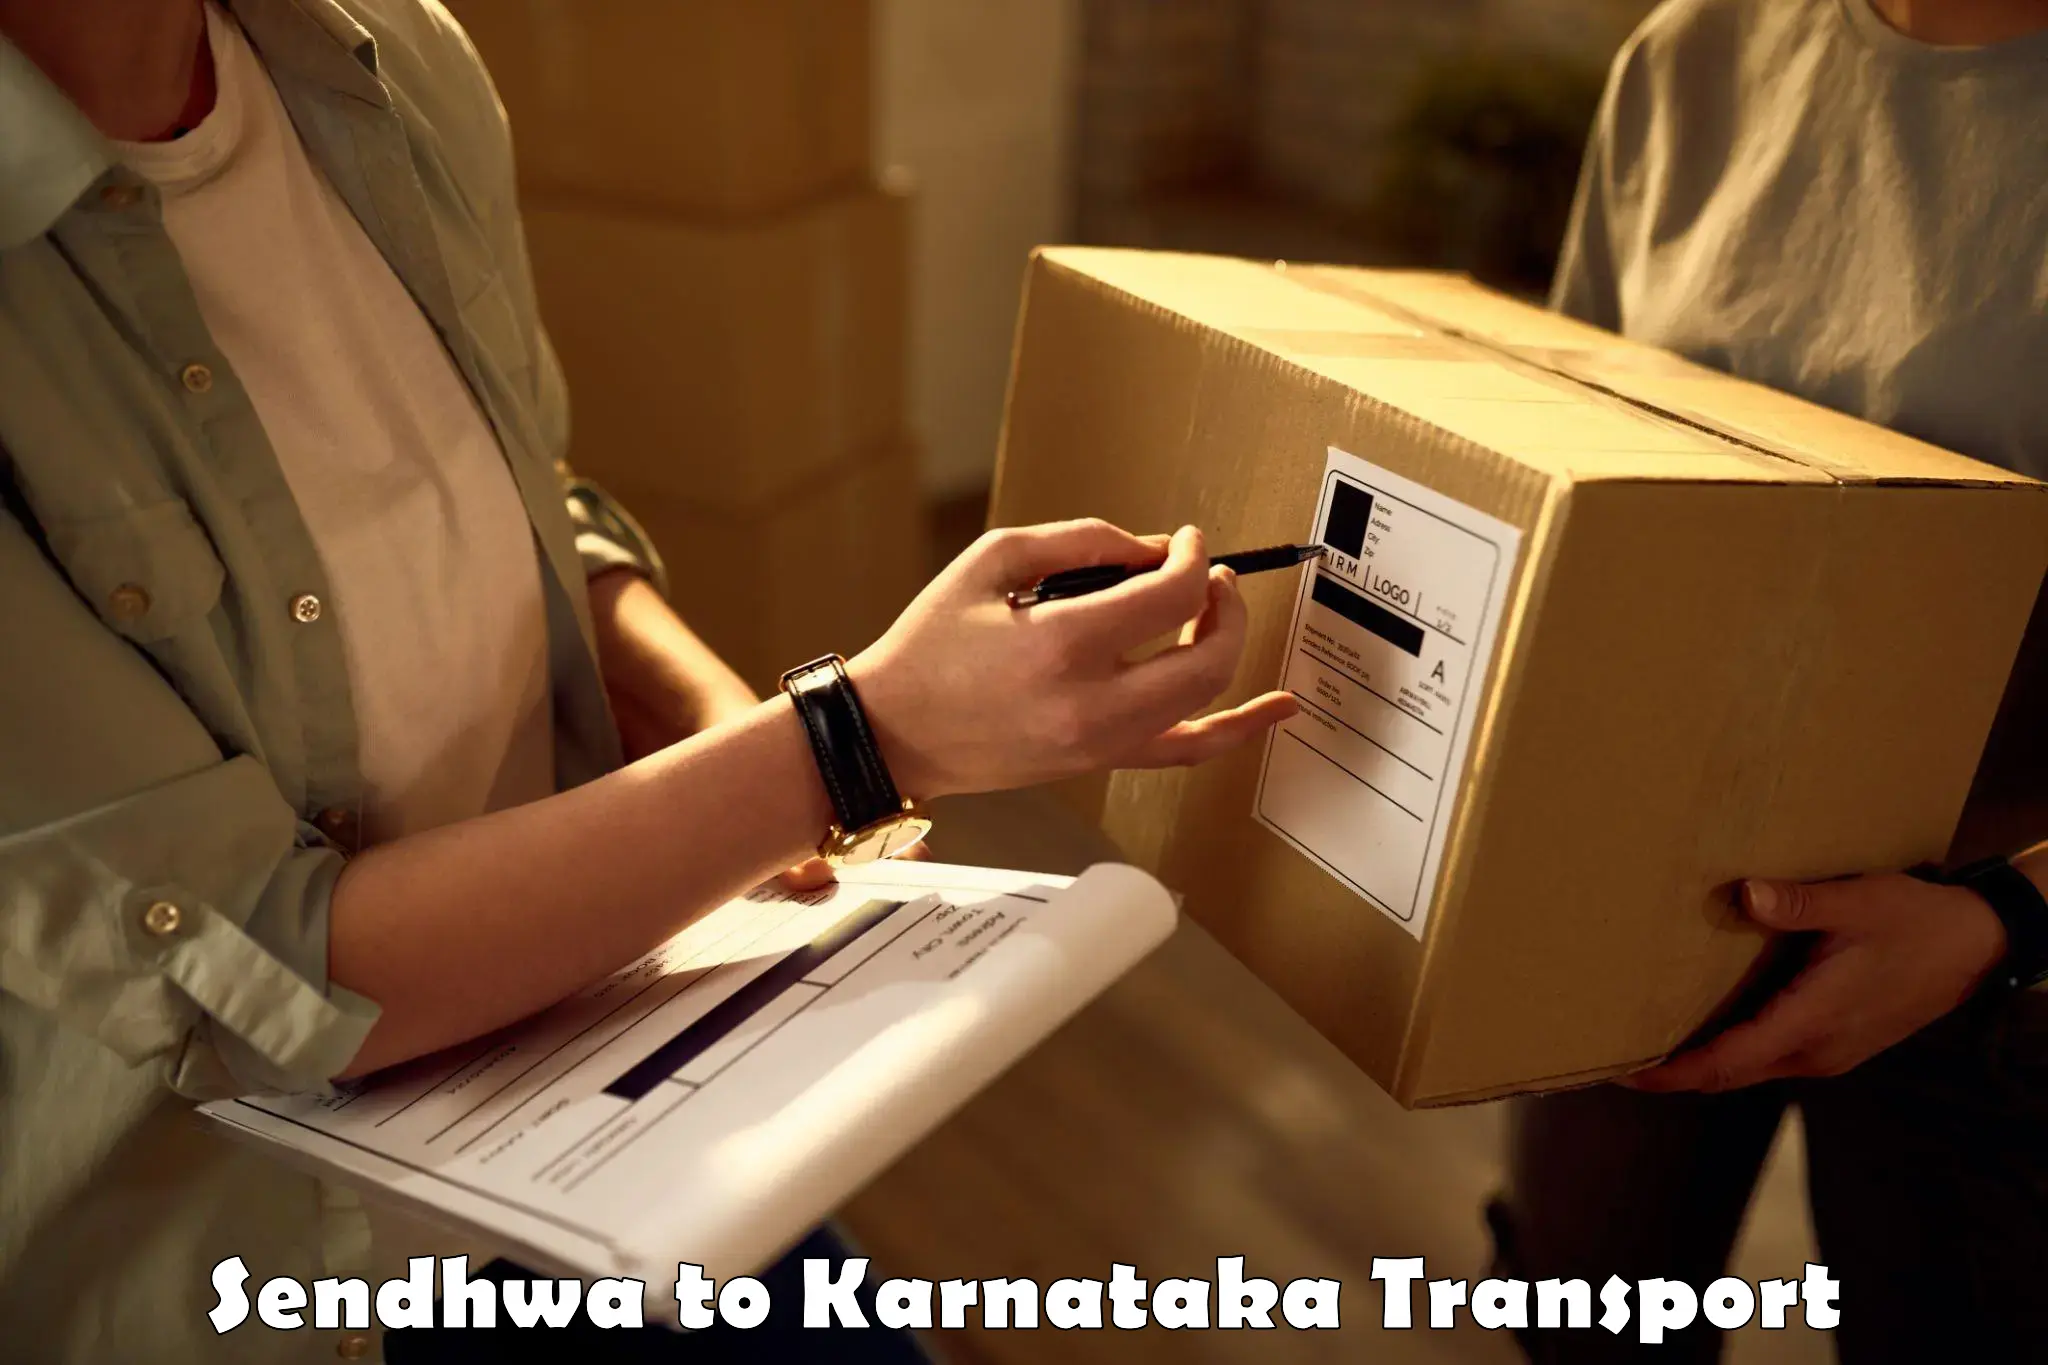 Commercial transport service Sendhwa to Kolhar